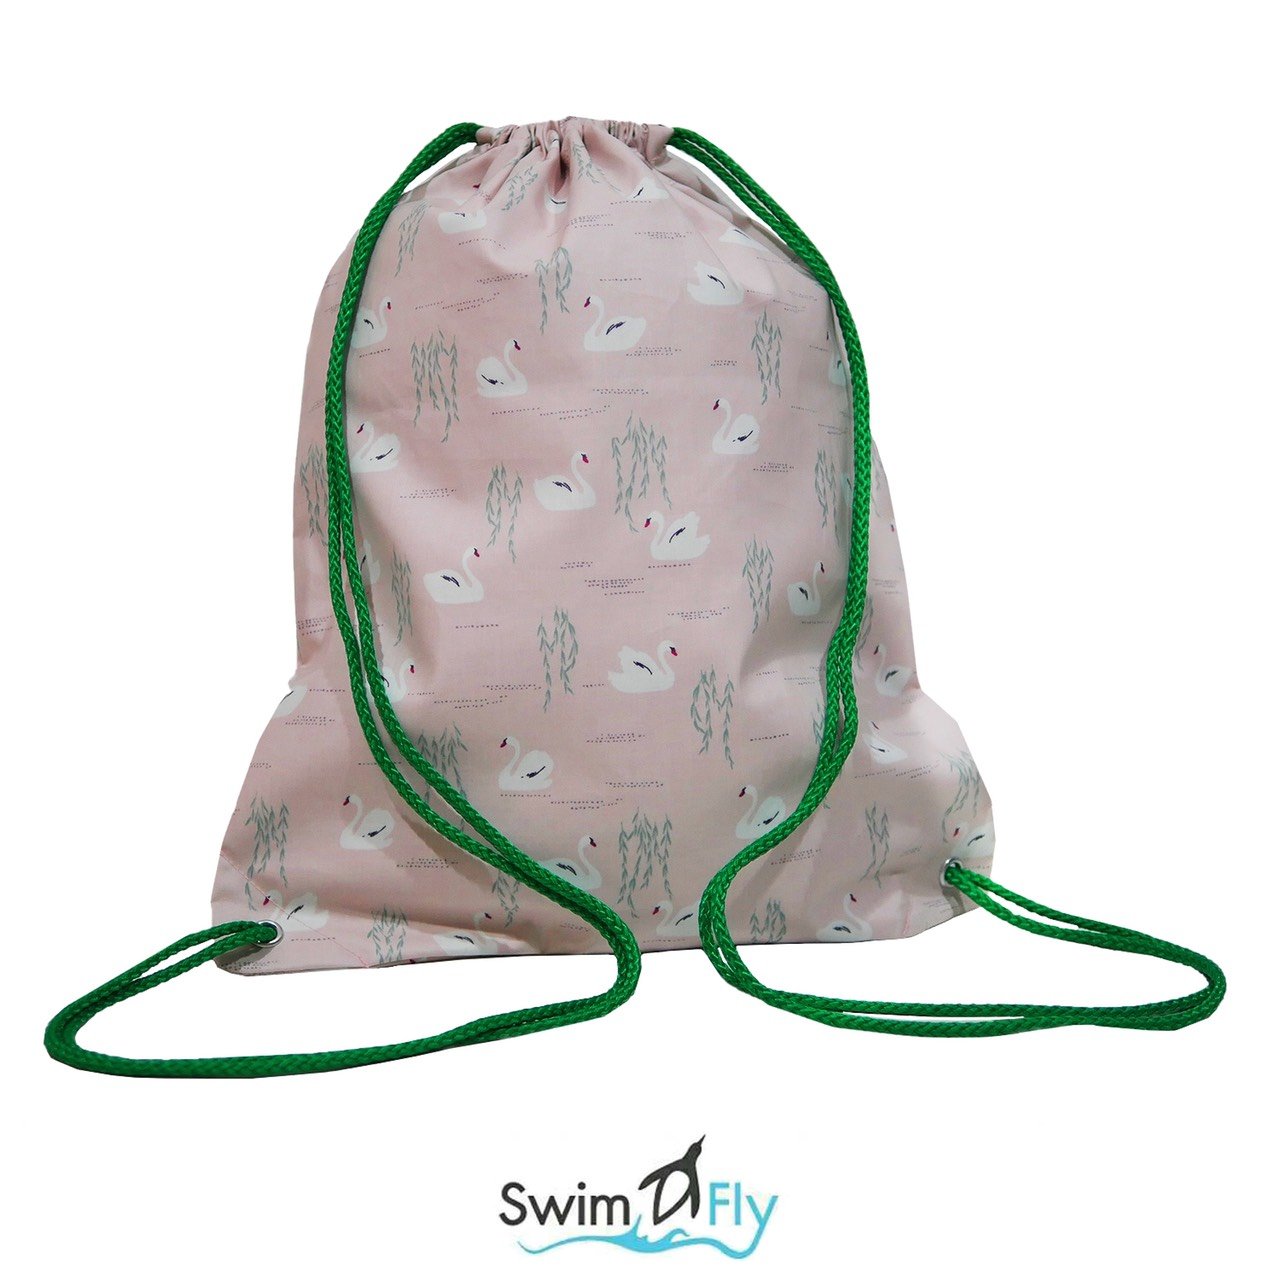 กระเป๋าใส่ชุดว่ายน้ำ กันน้ำ 100% ลาย swan lake